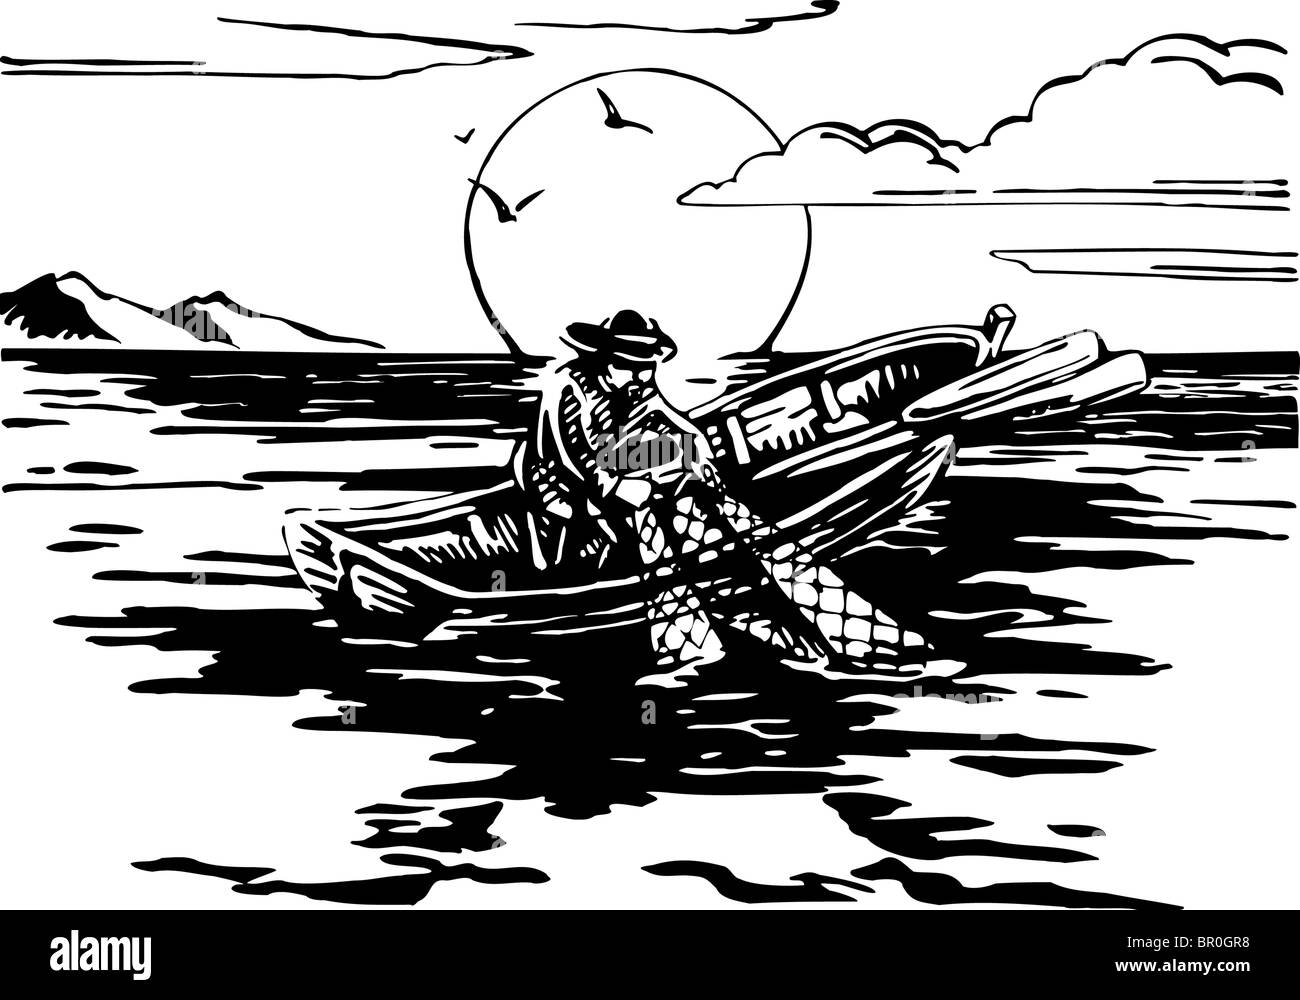 Un homme sur un bateau de la pêche au filet en noir et blanc Banque D'Images